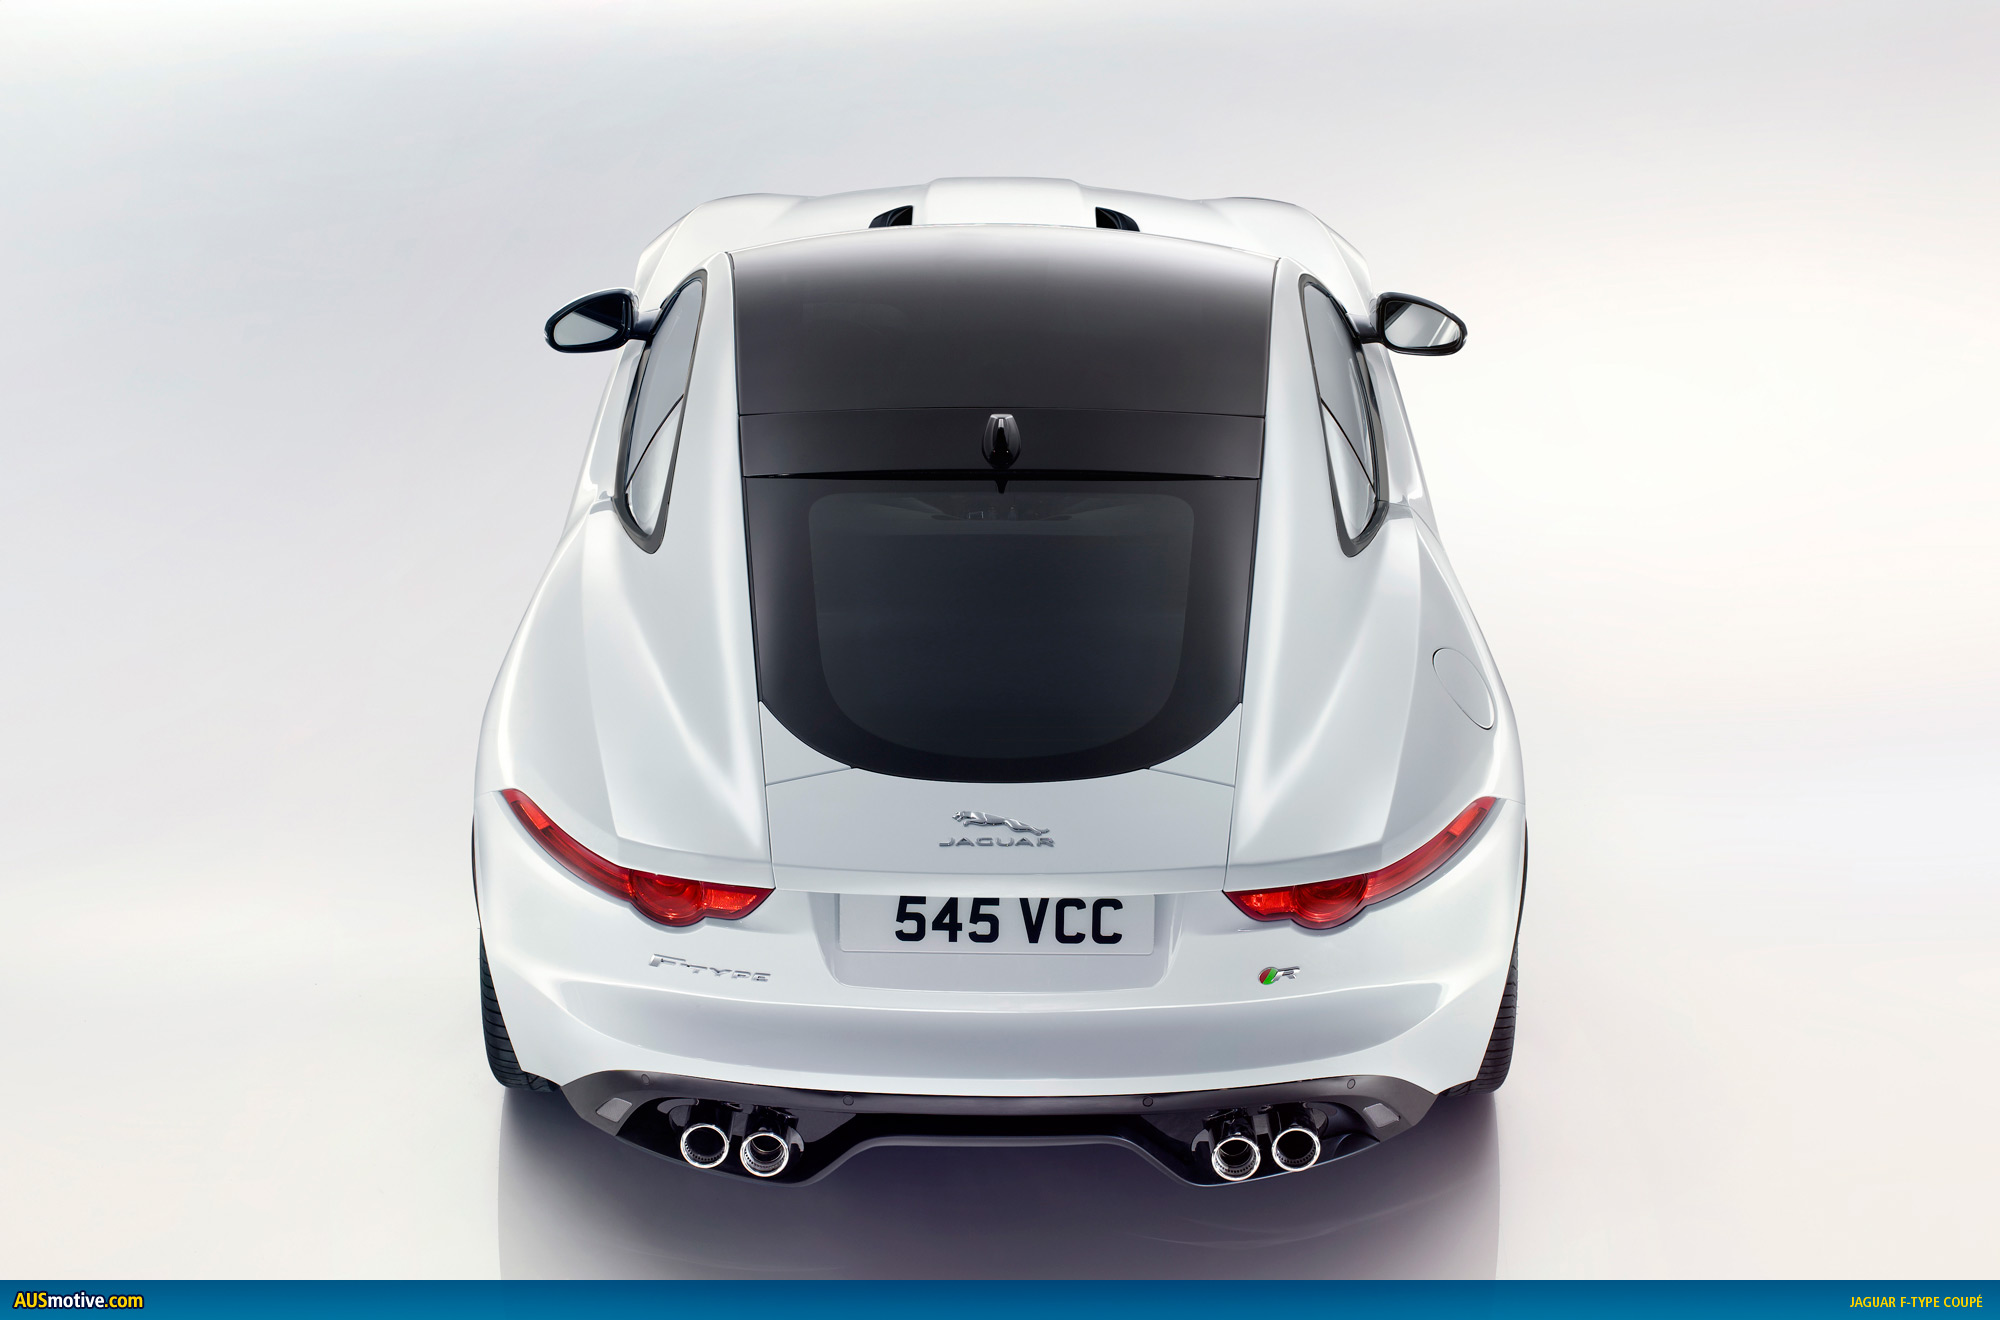 AUSmotive.com » LA 2013: Jaguar F-Type Coupé revealed